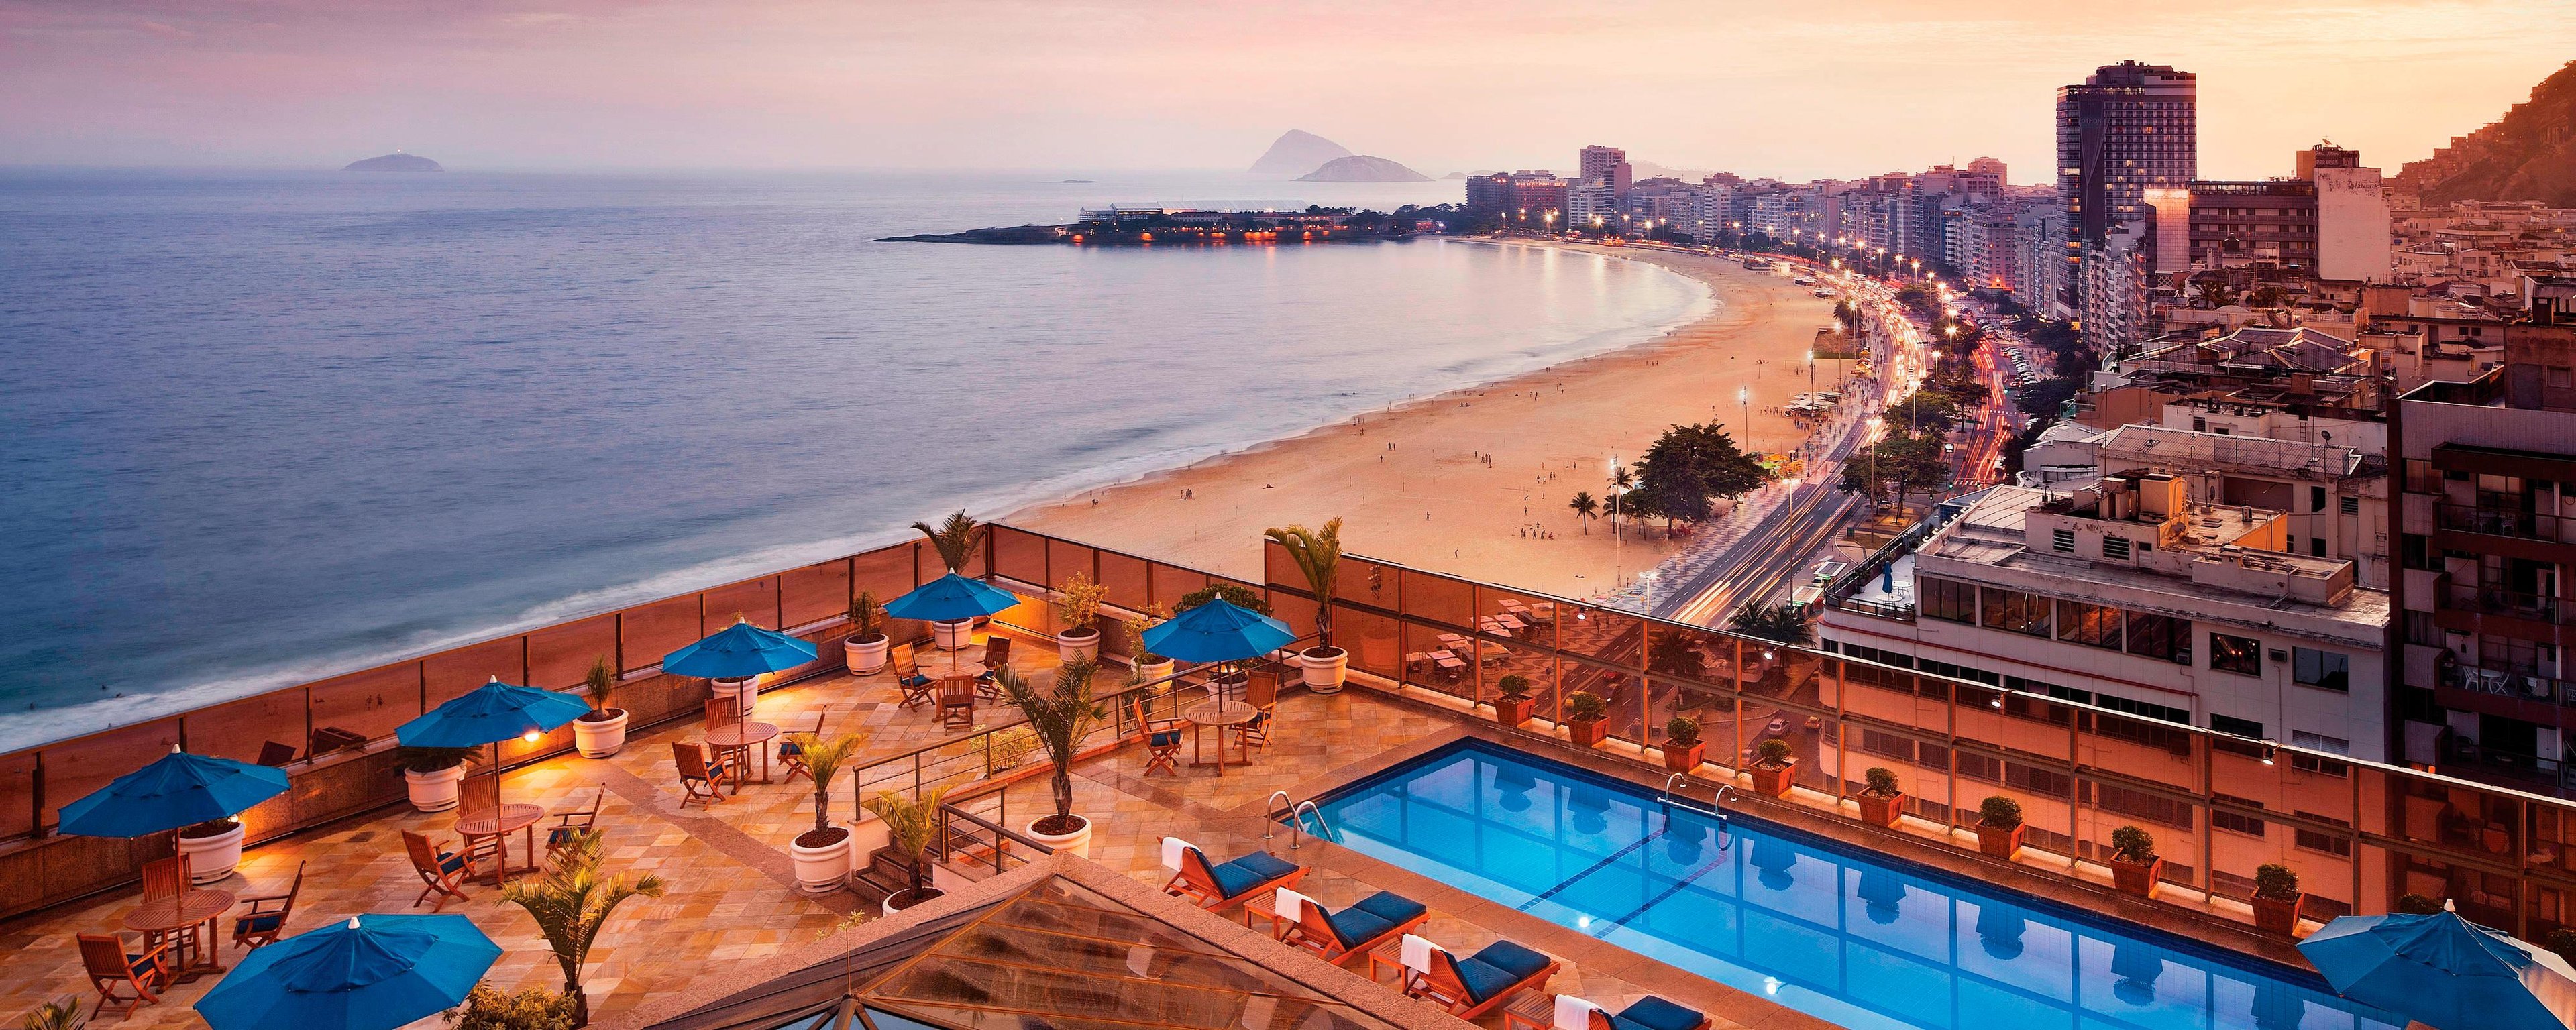 O Marriott possui hotéis em diversas partes do mundo, incluindo o Brasil.